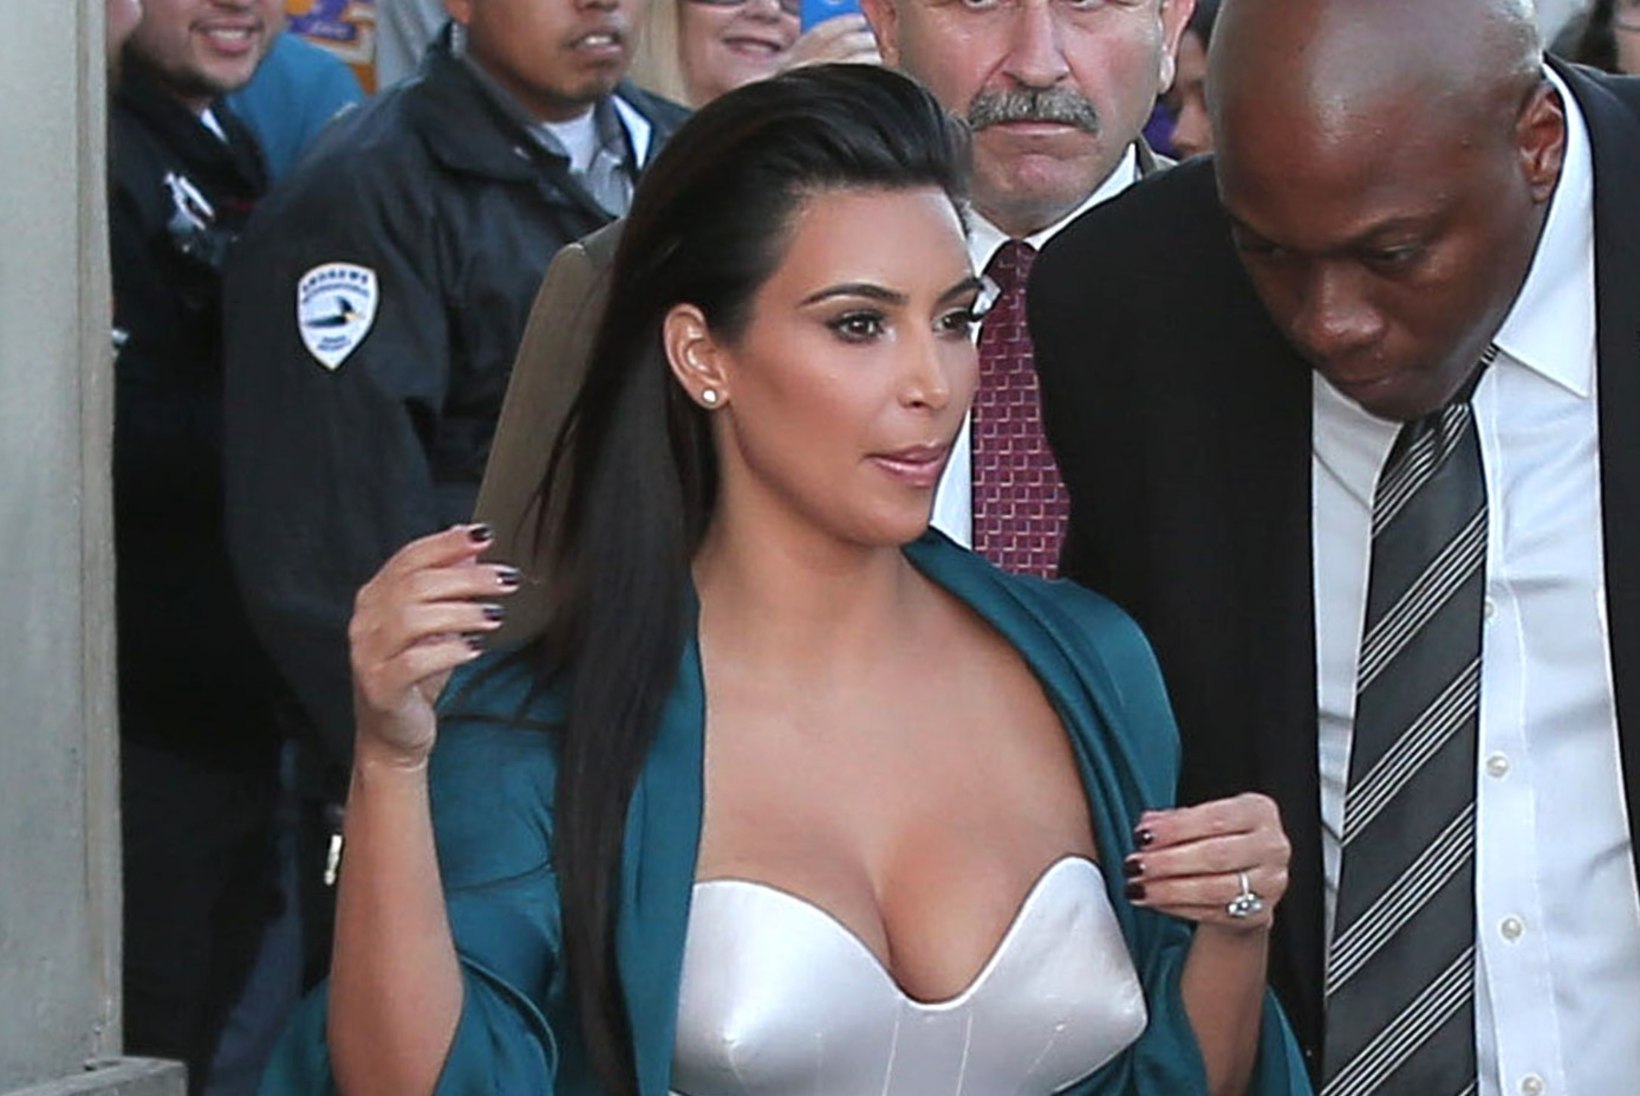 Kim Kardashian lasti jälle kodust (peaaegu) paljaste tissidega välja!